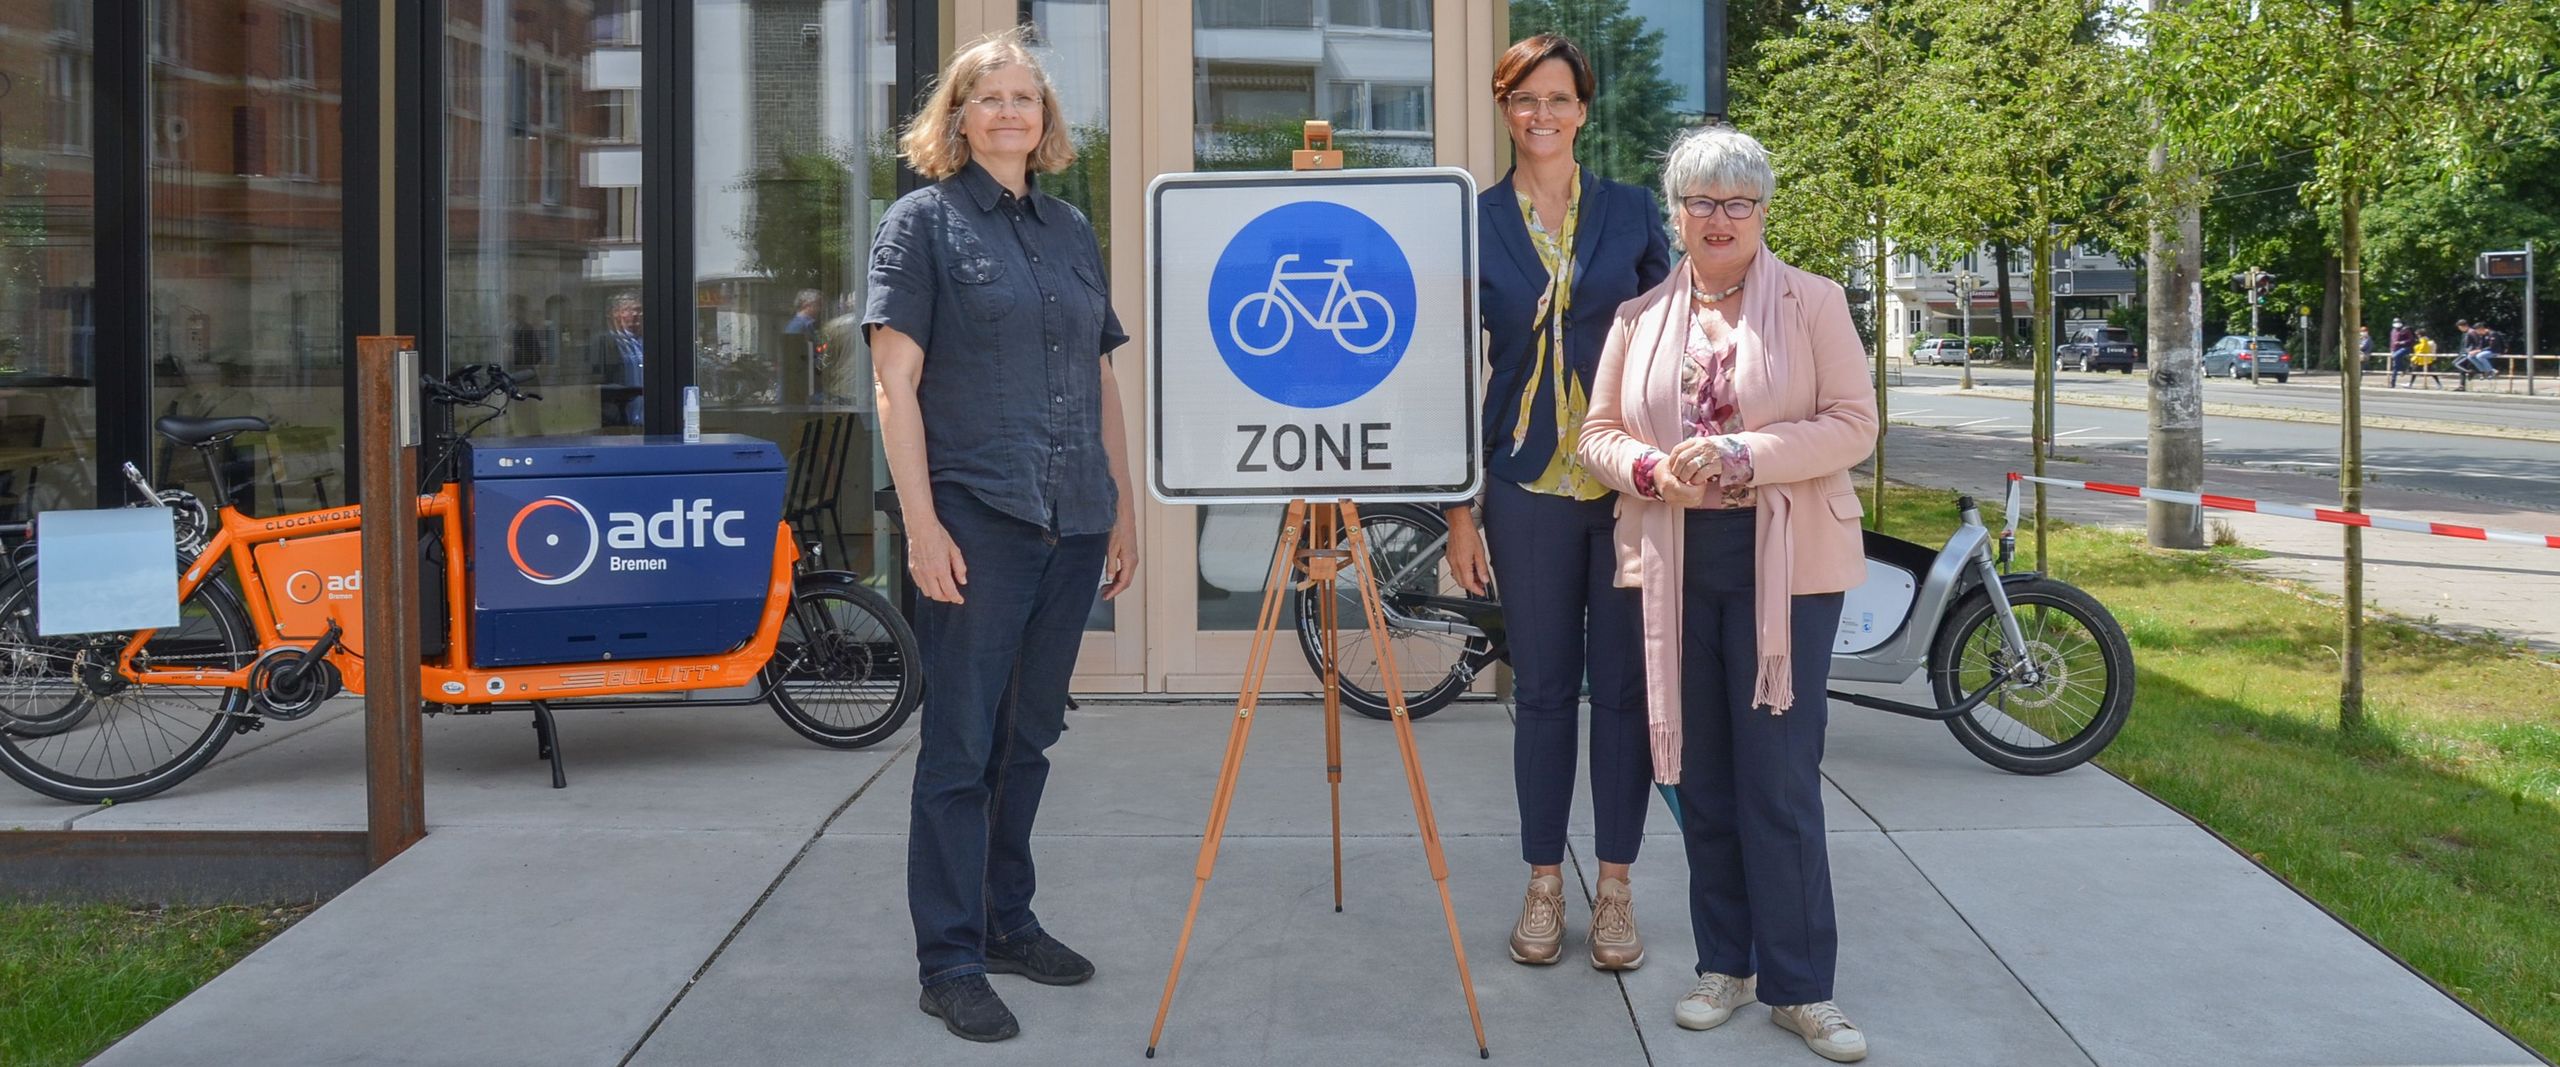 Steffi Kollmann, Ulrike Mansfeld und Karin Luckey stehen neben einem Schild "Fahrradzone" vor dem FahrradRepaircafé.